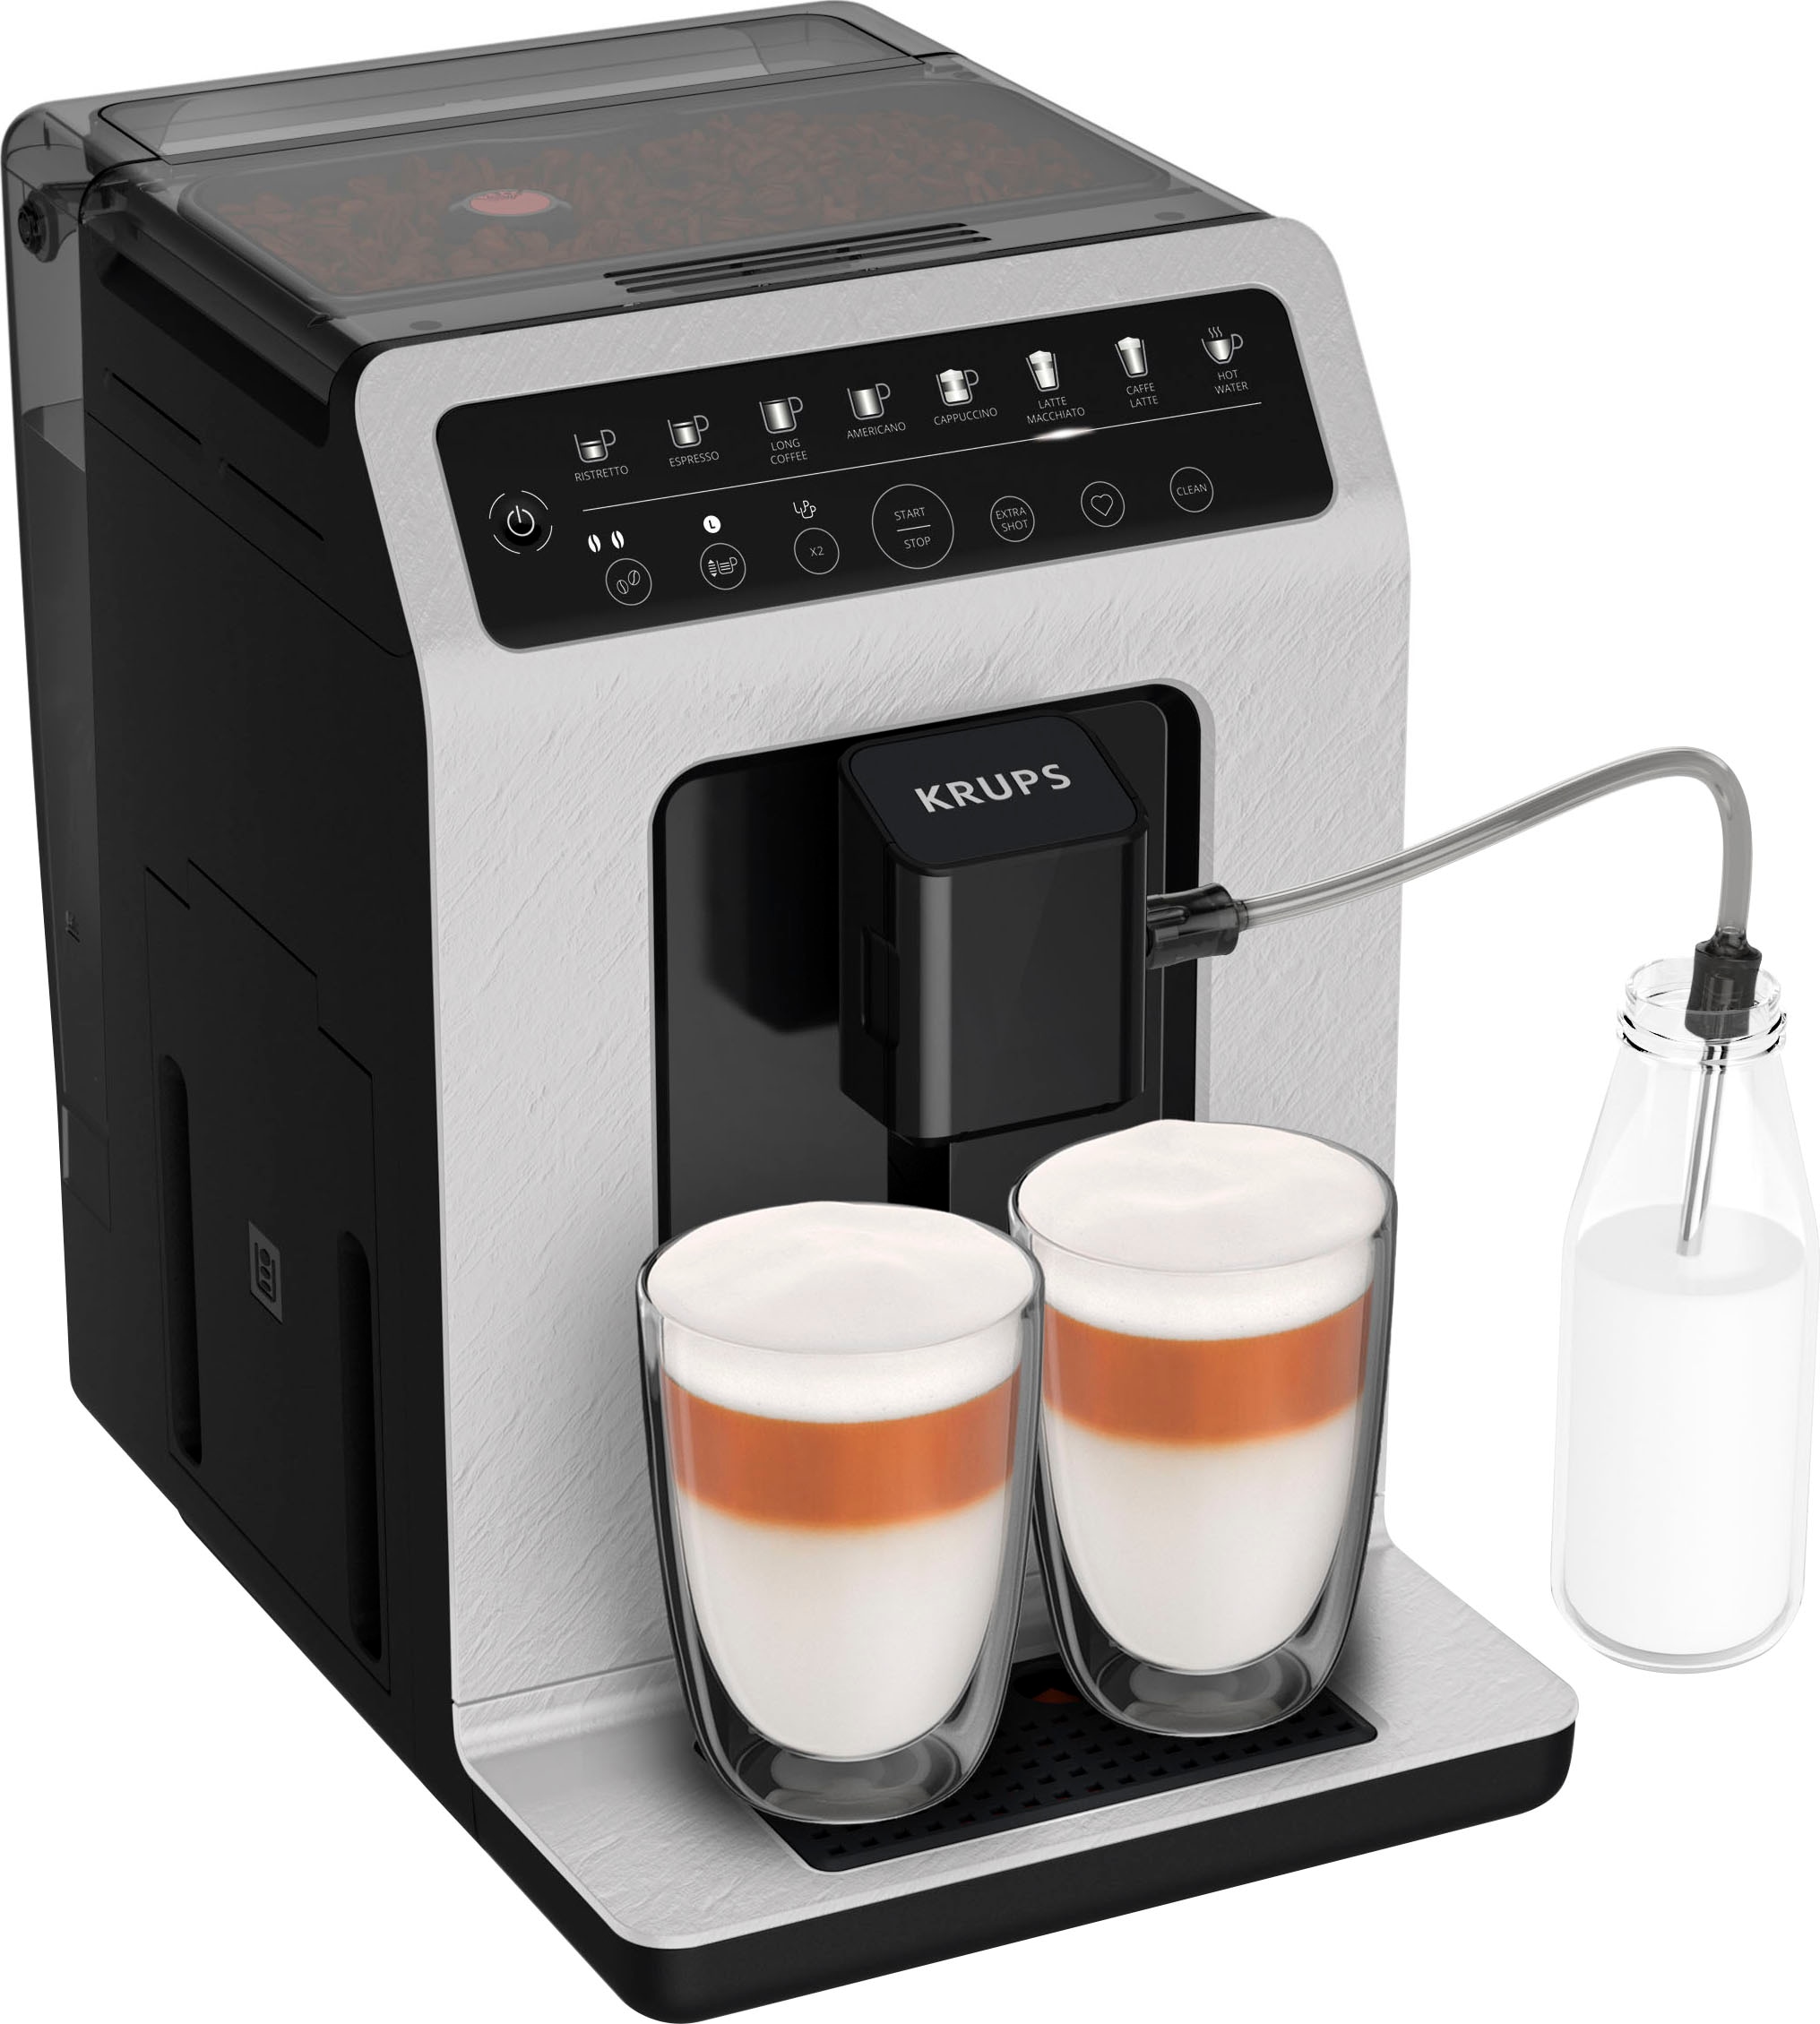 6 »EP3343/50 Philips mit OTTO LatteGo-Milchsystem, Online Kaffeespezialitäten, 3300 Weiß/Schwarz im Shop Series«, Kaffeevollautomat